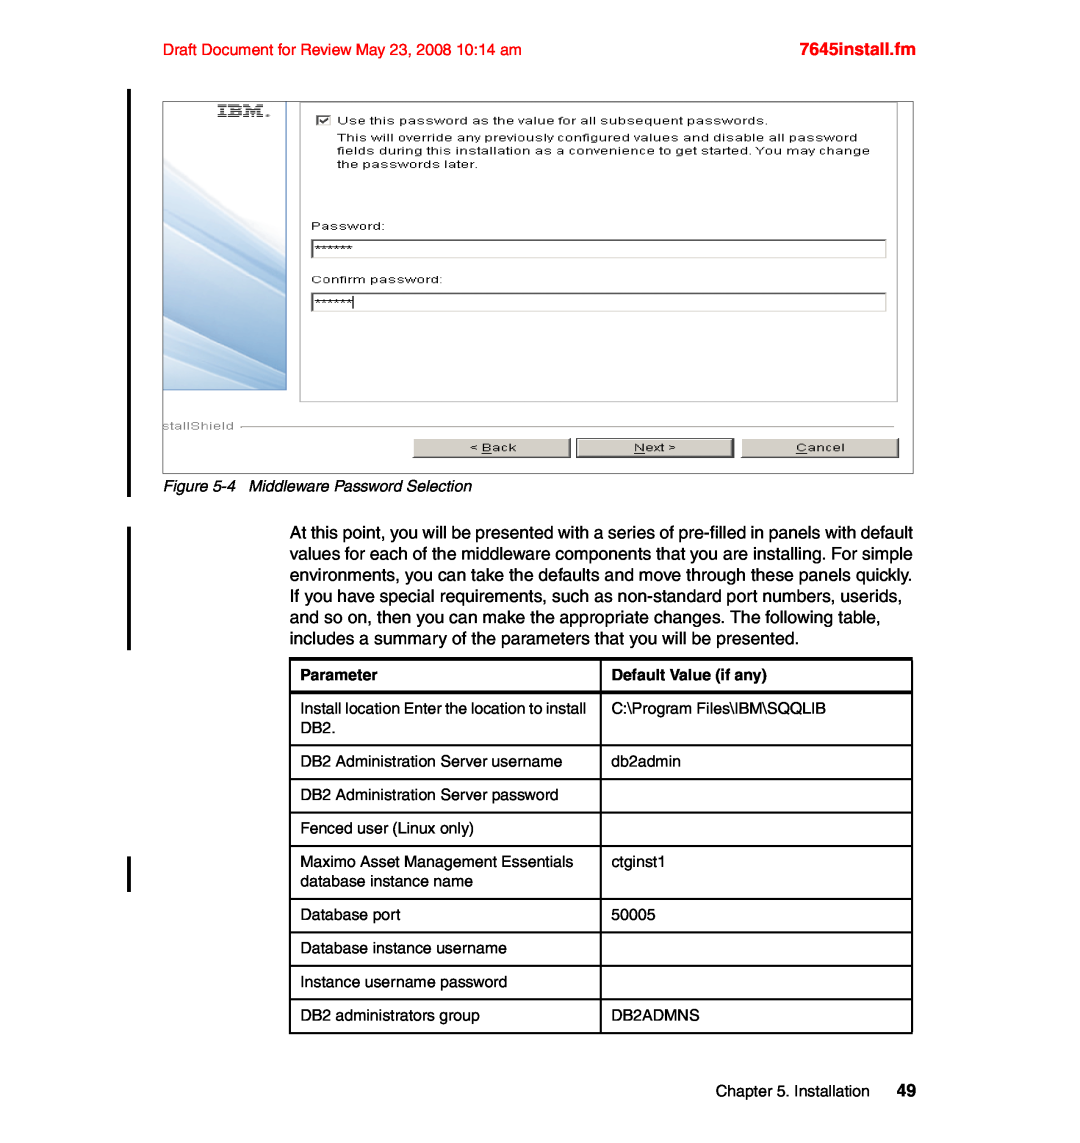 IBM SG24-7645-00 manual 7645install.fm, Parameter, Default Value if any 